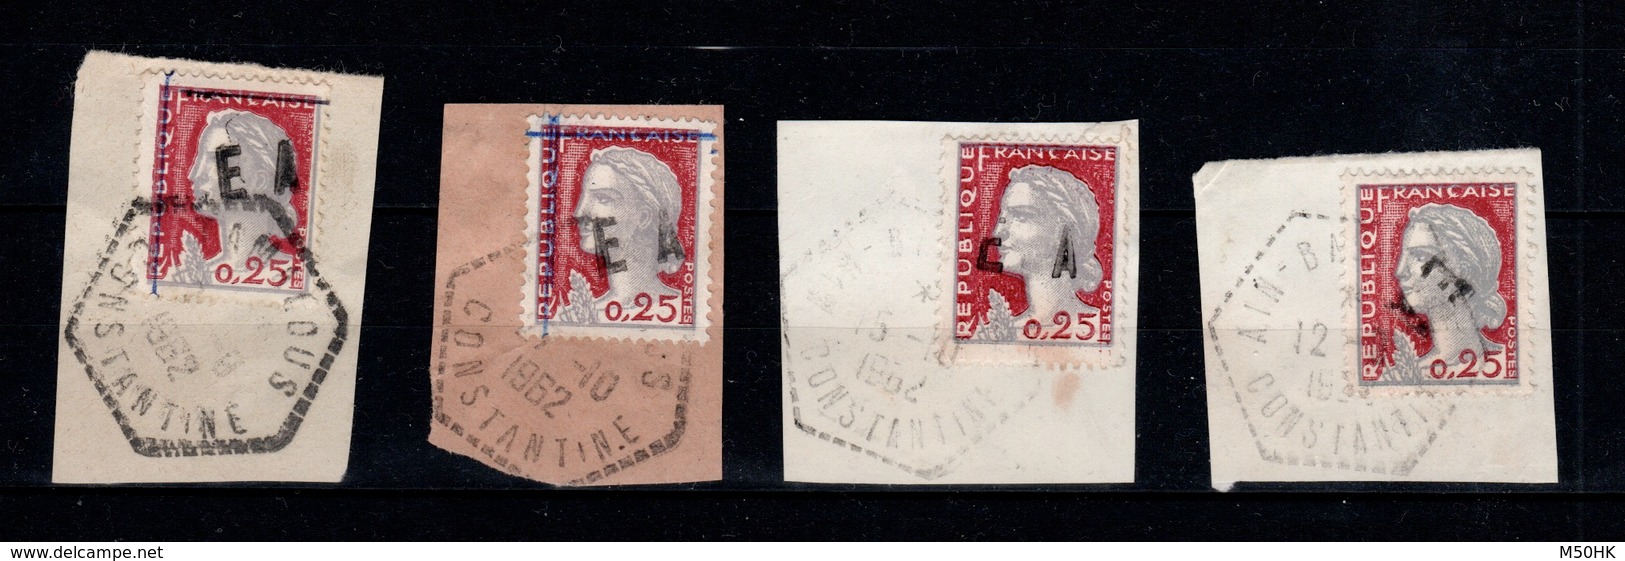 Algerie - Collection (14 scans) de 69 timbres surchargés EA Etat Algerien oblitérés sur fragments